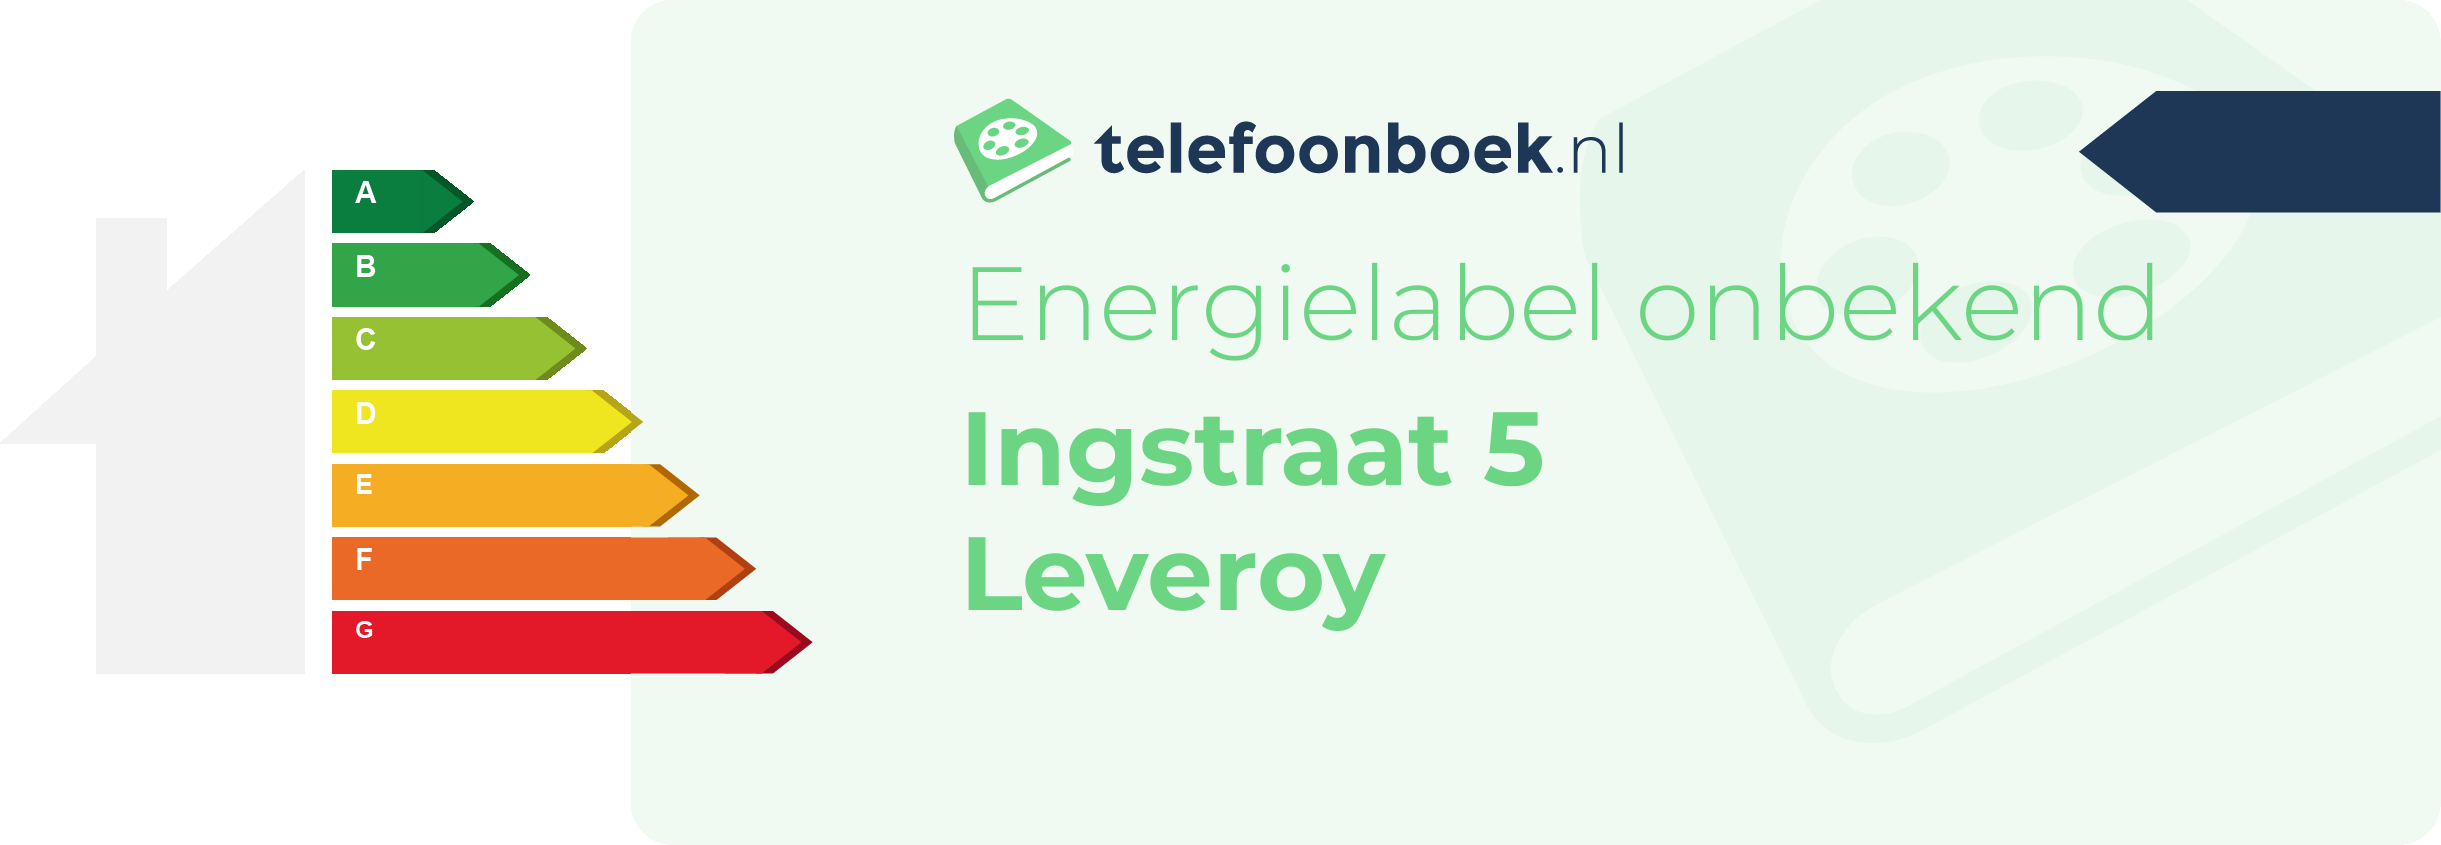 Energielabel Ingstraat 5 Leveroy